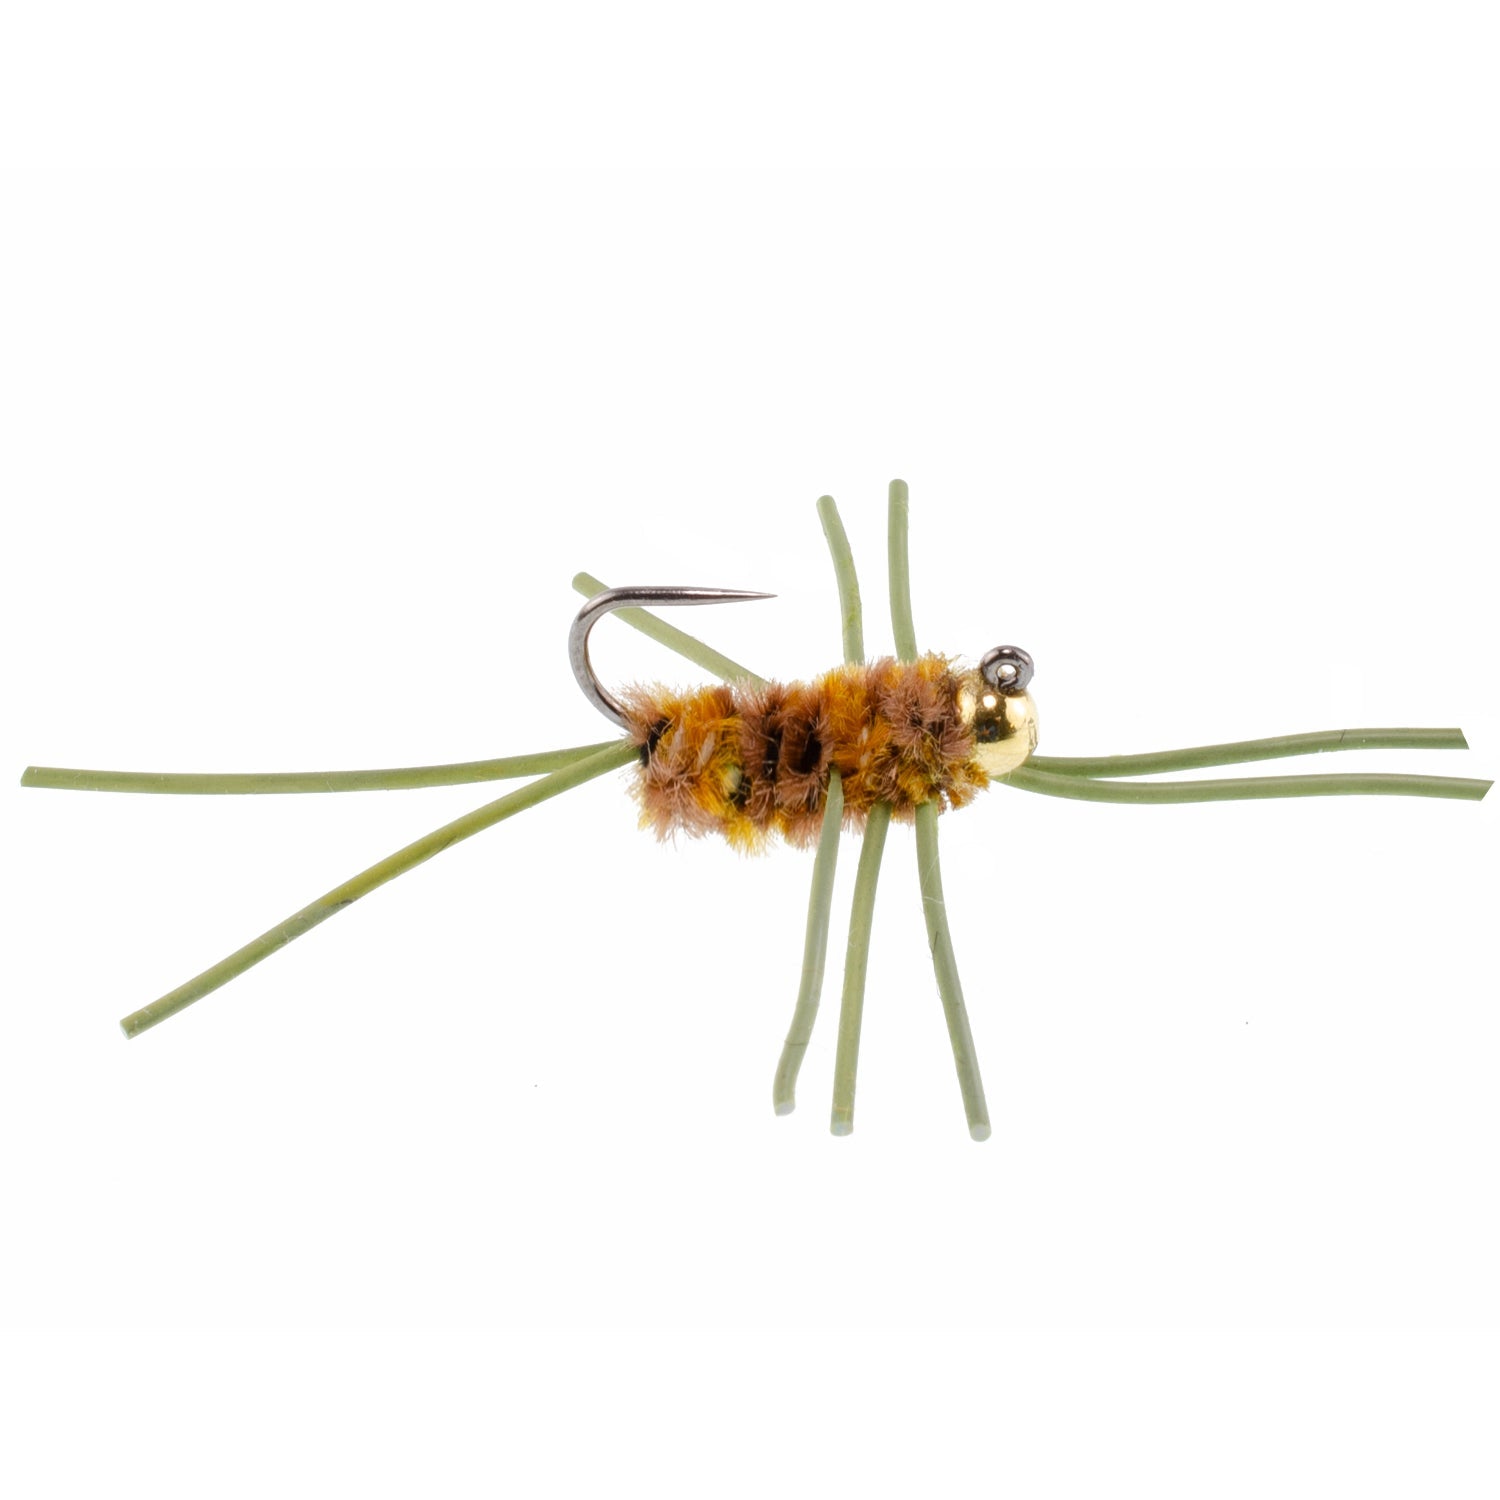 Cuentas de tungsteno Jigged Pat's Rubber Legs Surtido de moscas para pesca con mosca, patrón de mosca húmeda para trucha y lubina, 14 moscas, 7 colores, tamaño de anzuelo 10 